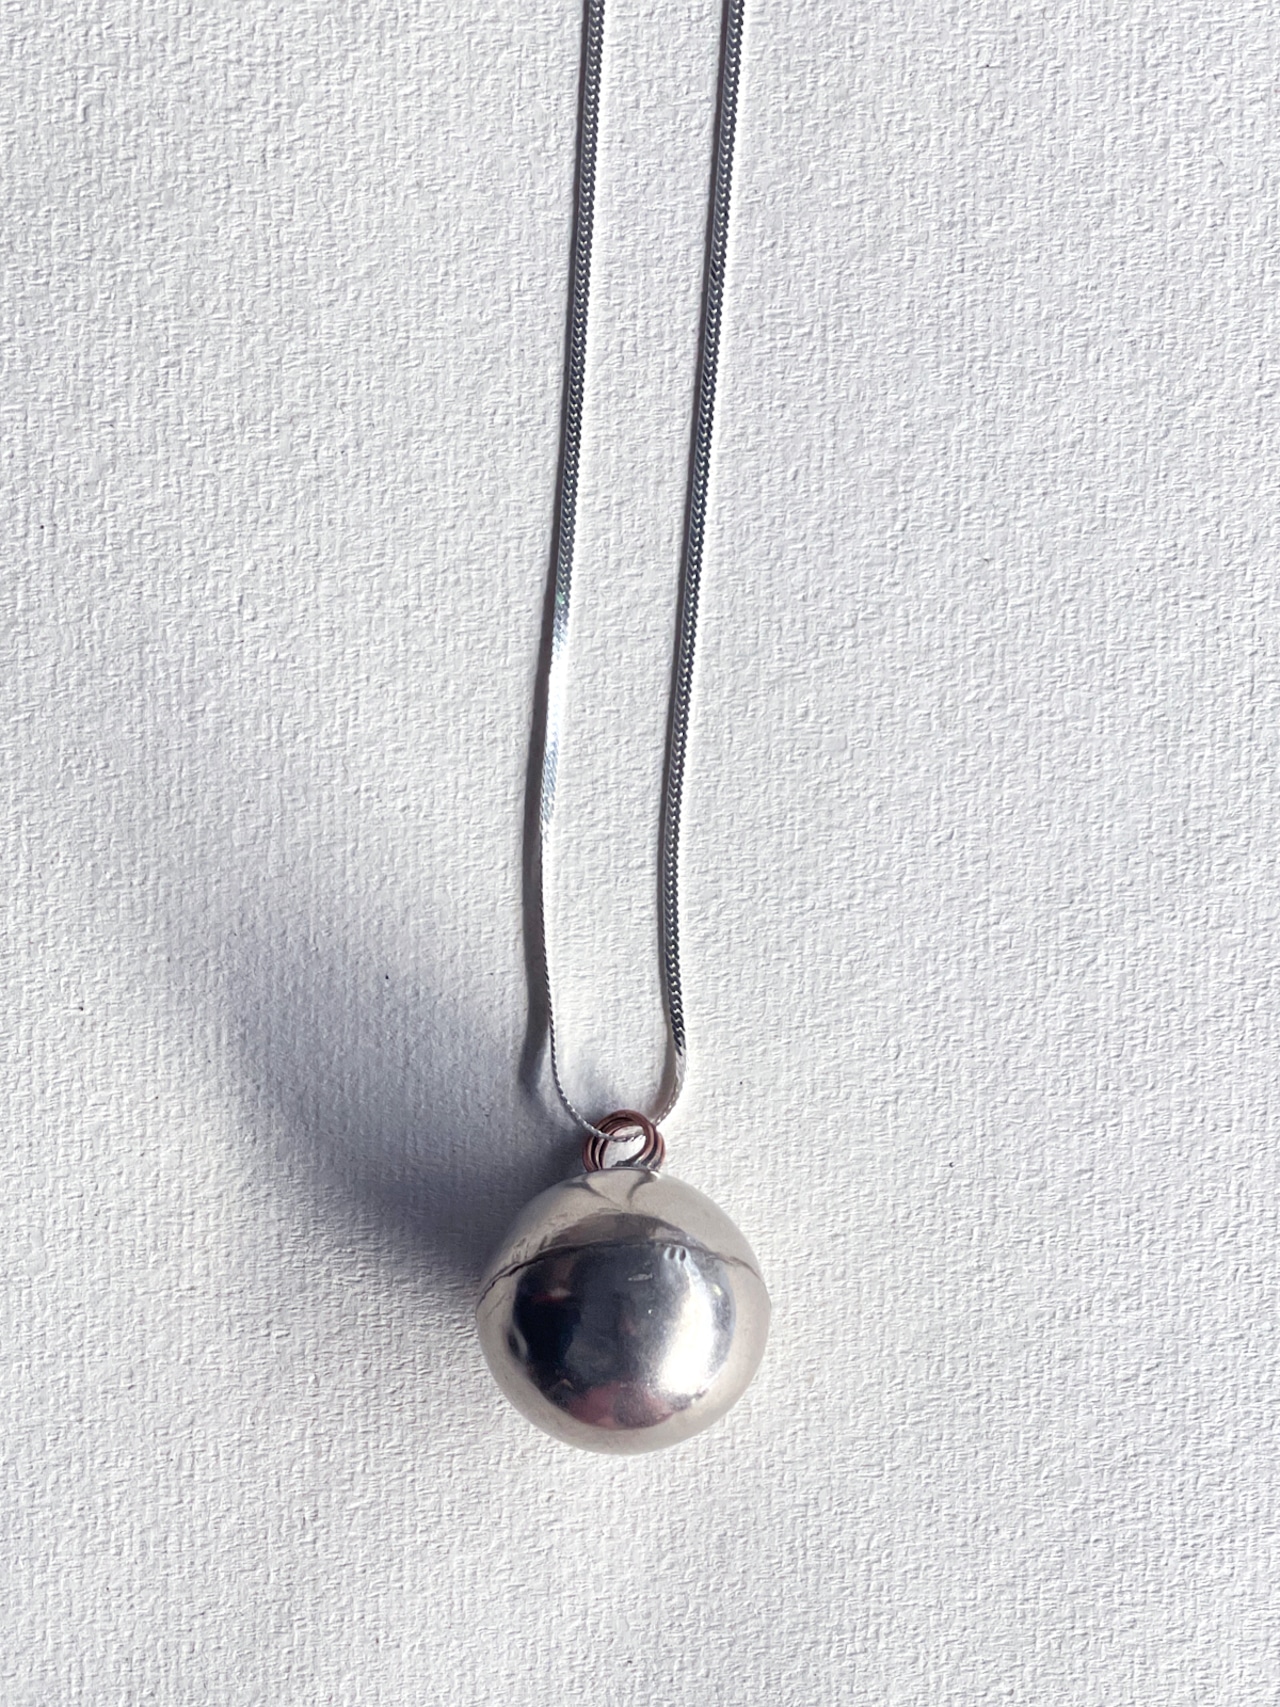 tay original／Vintage silver necklace